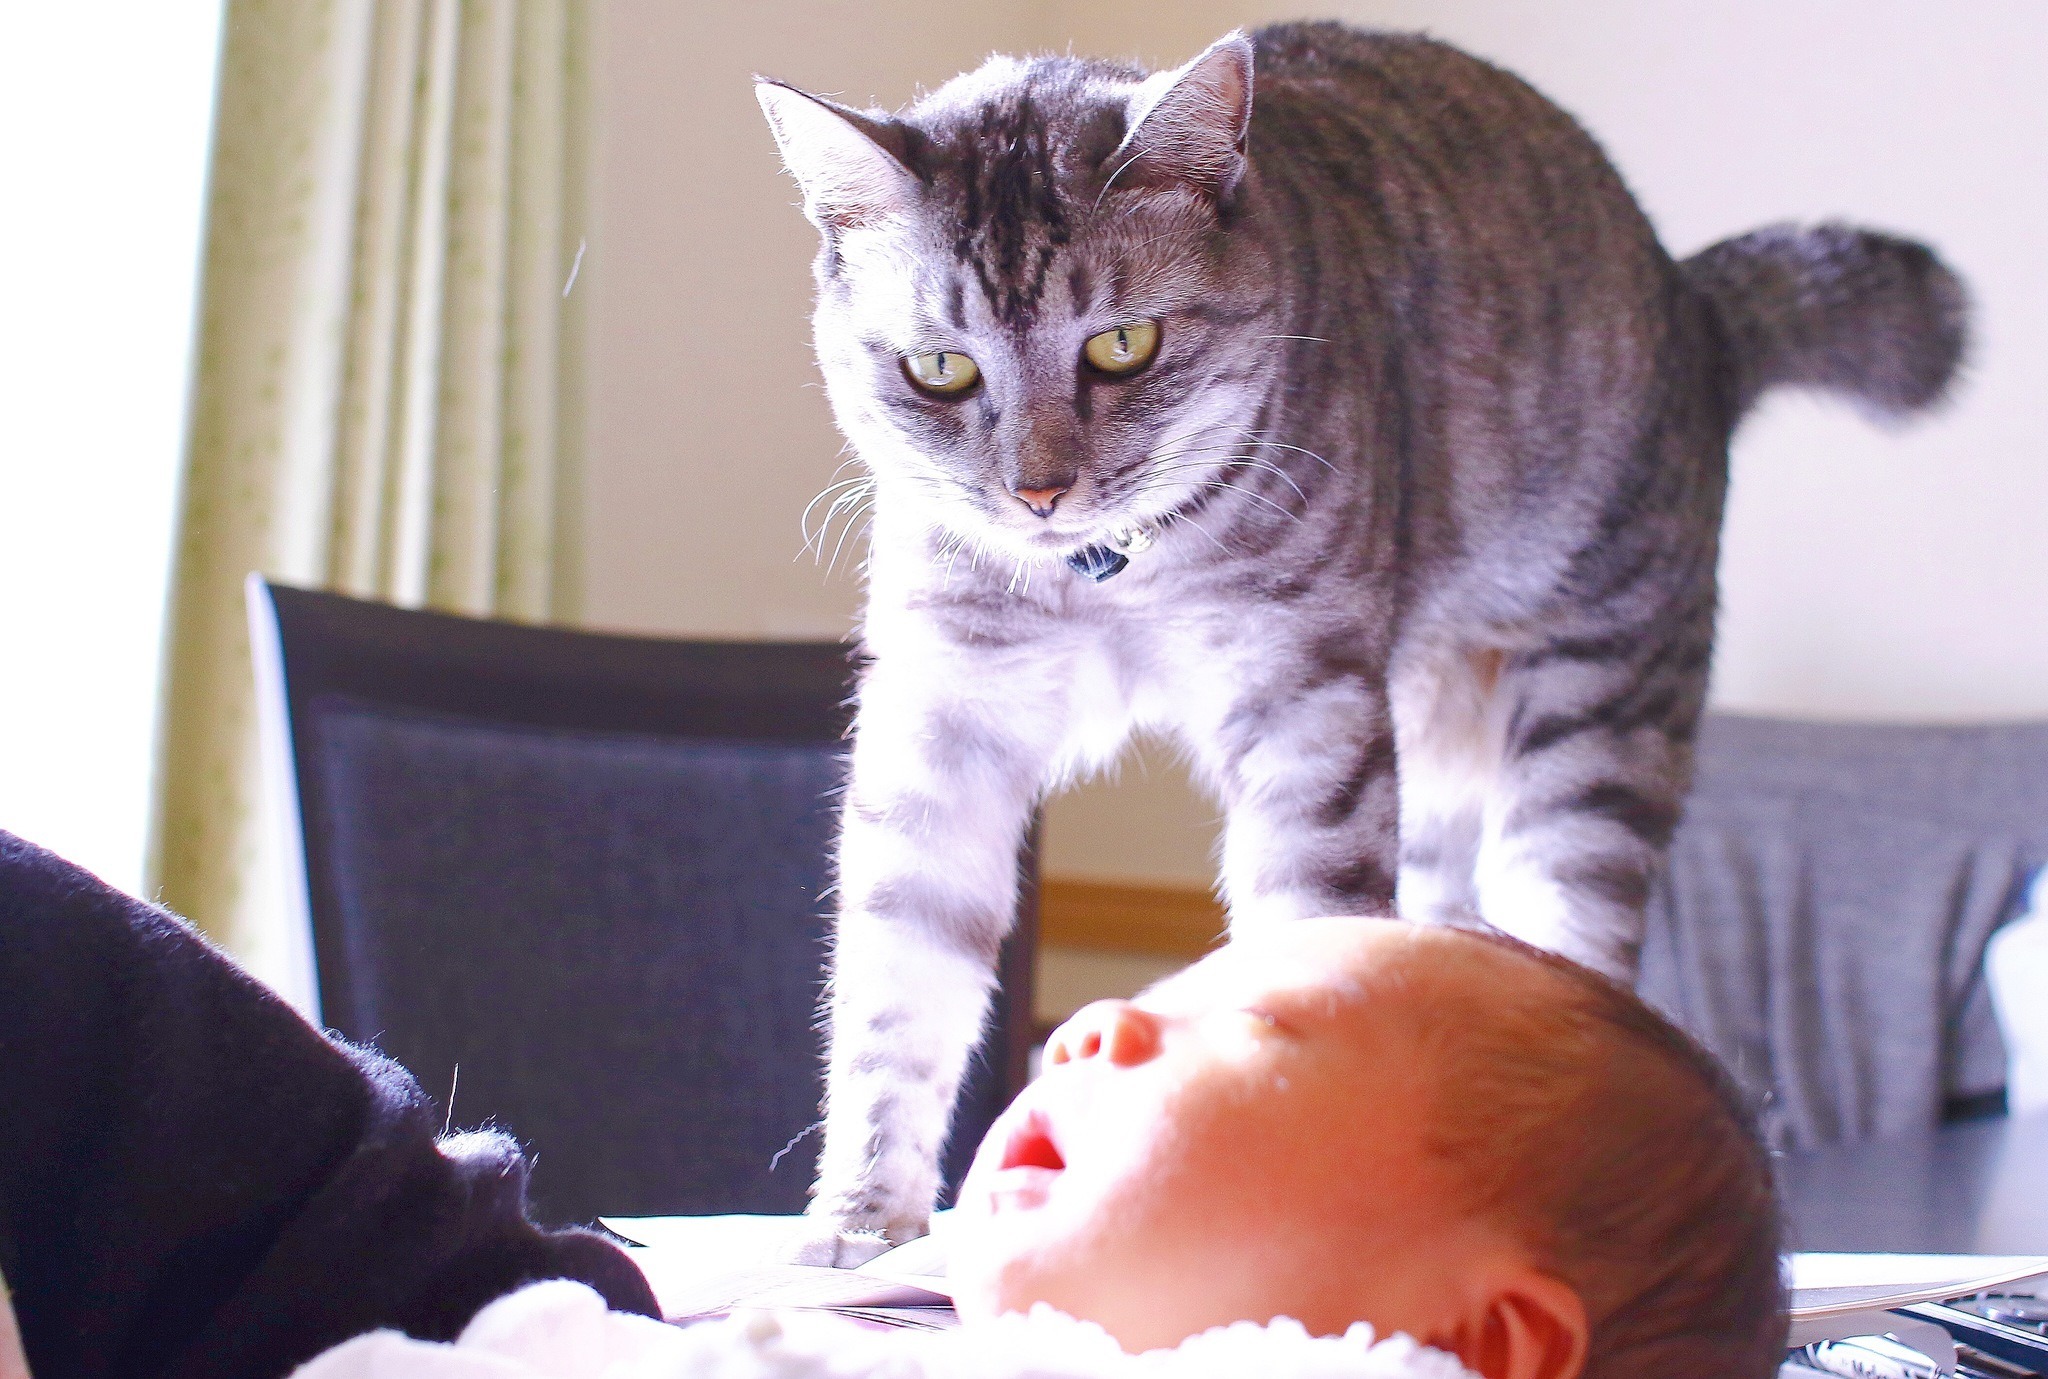 赤ちゃんと猫 Vol 2 猫のストレスが限界に 赤ちゃんに慣れるまでの14日間 動物のリアルを伝えるwebメディア Reanimal